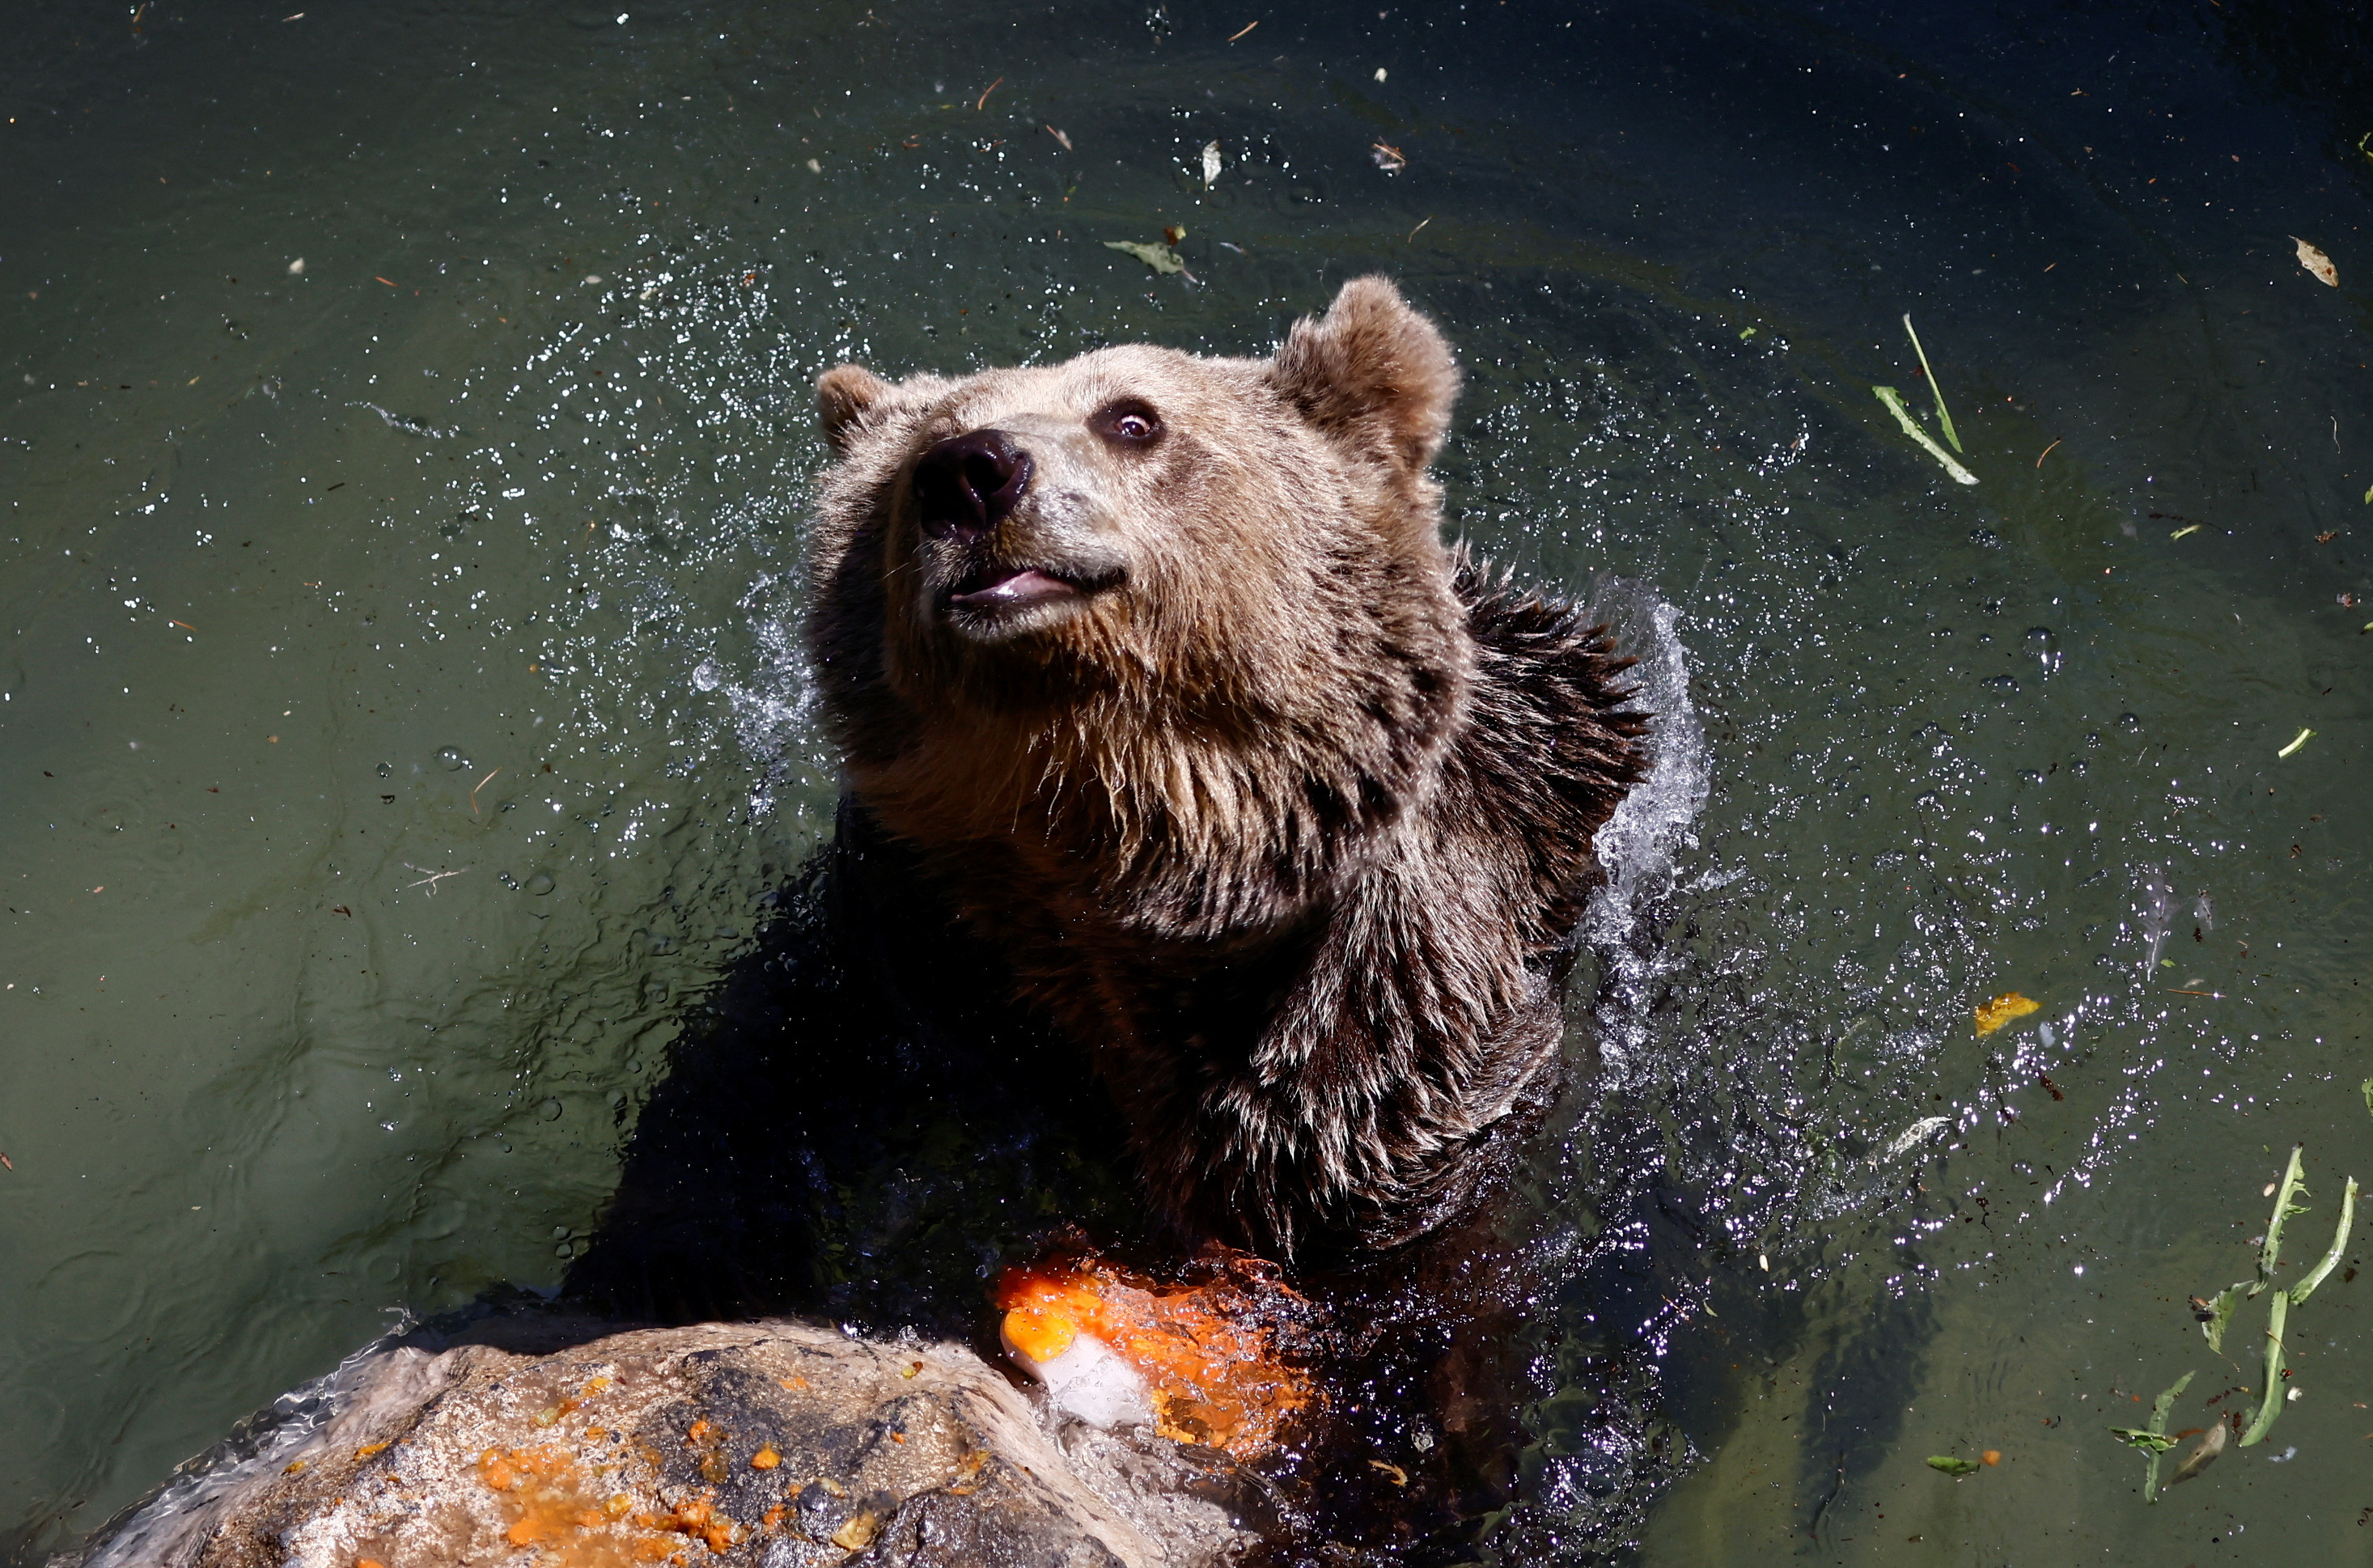 Gli animali in cattività hanno iniziato a ricevere ghiaccio nei loro corpi idrici per aiutare ad abbassare la temperatura corporea.  Questo orso bruno può essere visto nuotare nello Zoo di Roma.